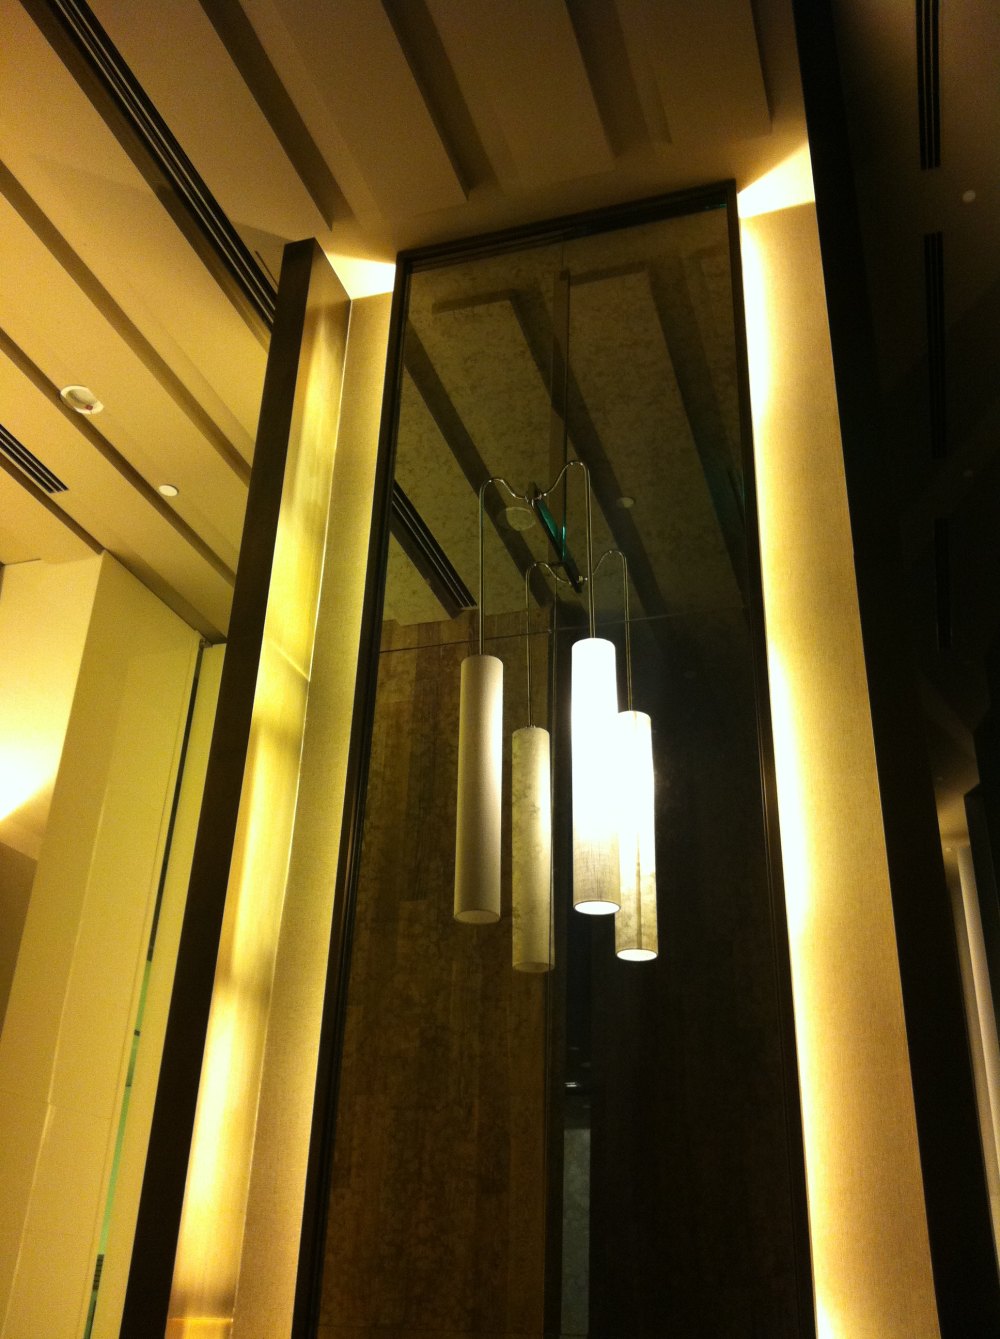 广州文华东方酒店(Mandarin Oriental Hotel)20130613第9页更新_IMG_5110.JPG